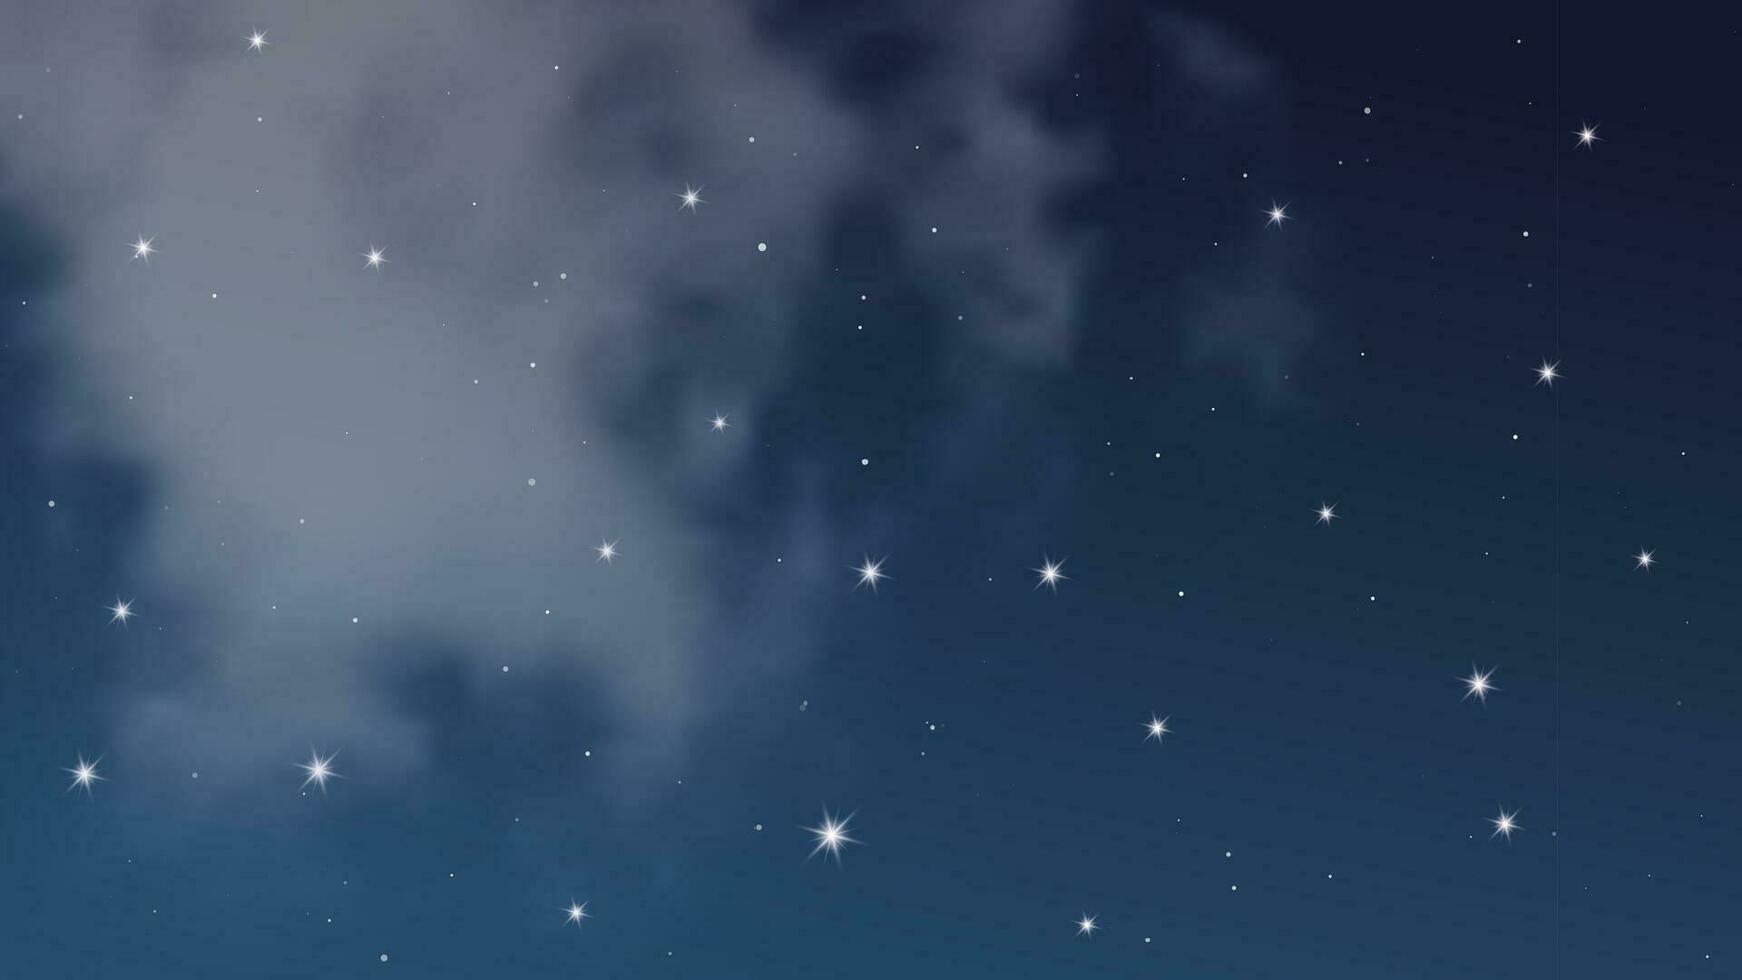 cielo nocturno con nubes y muchas estrellas. fondo de naturaleza abstracta con polvo de estrellas en el universo profundo. ilustración vectorial vector